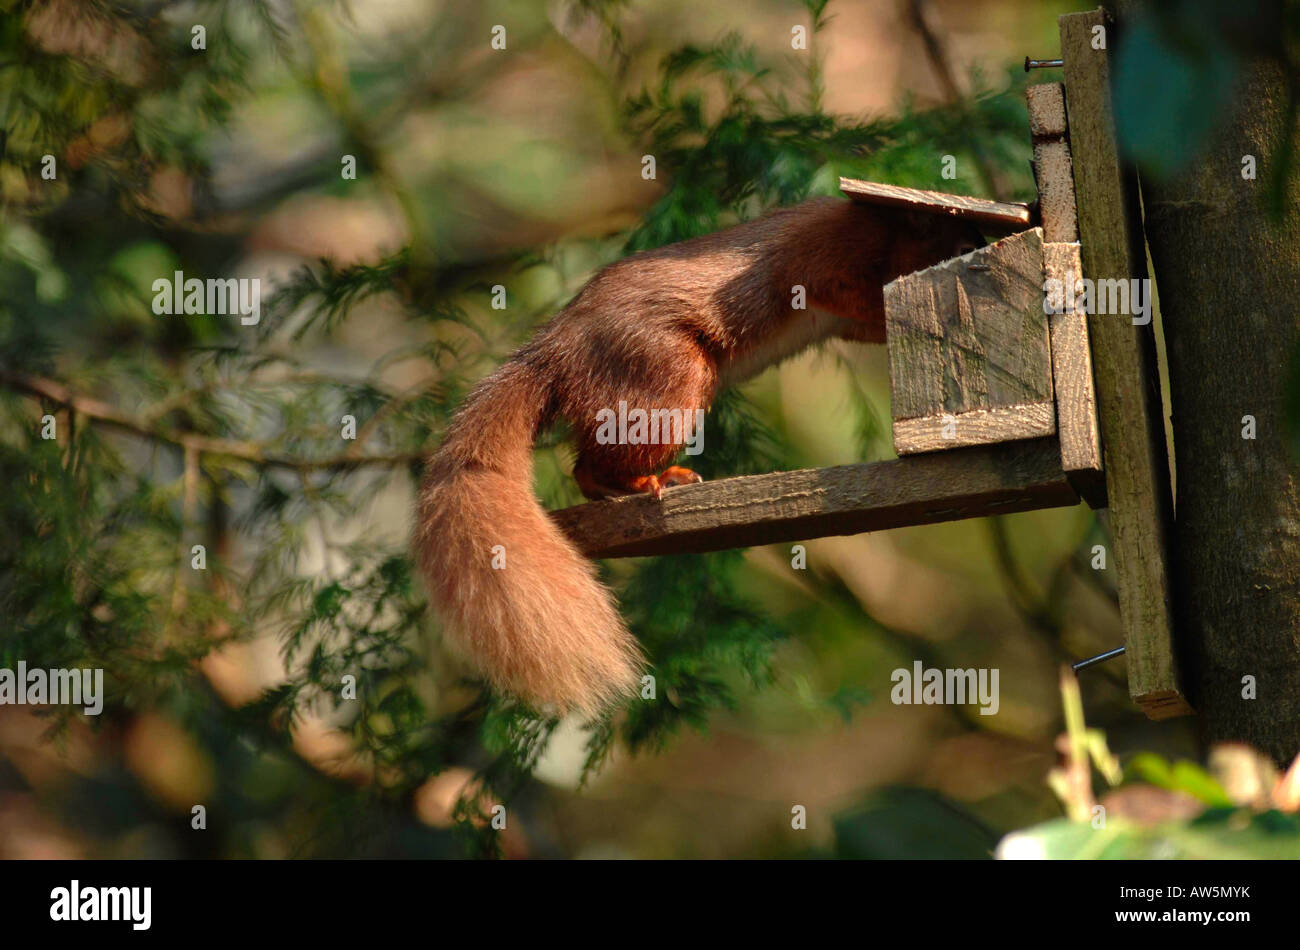 Uno scoiattolo rosso alimenta i dadi sulla sinistra in un alimentatore di scoiattolo. L'animale ha bisogno di aprire l'alimentatore per accedere ai dadi. 3 serie di 4. Foto Stock